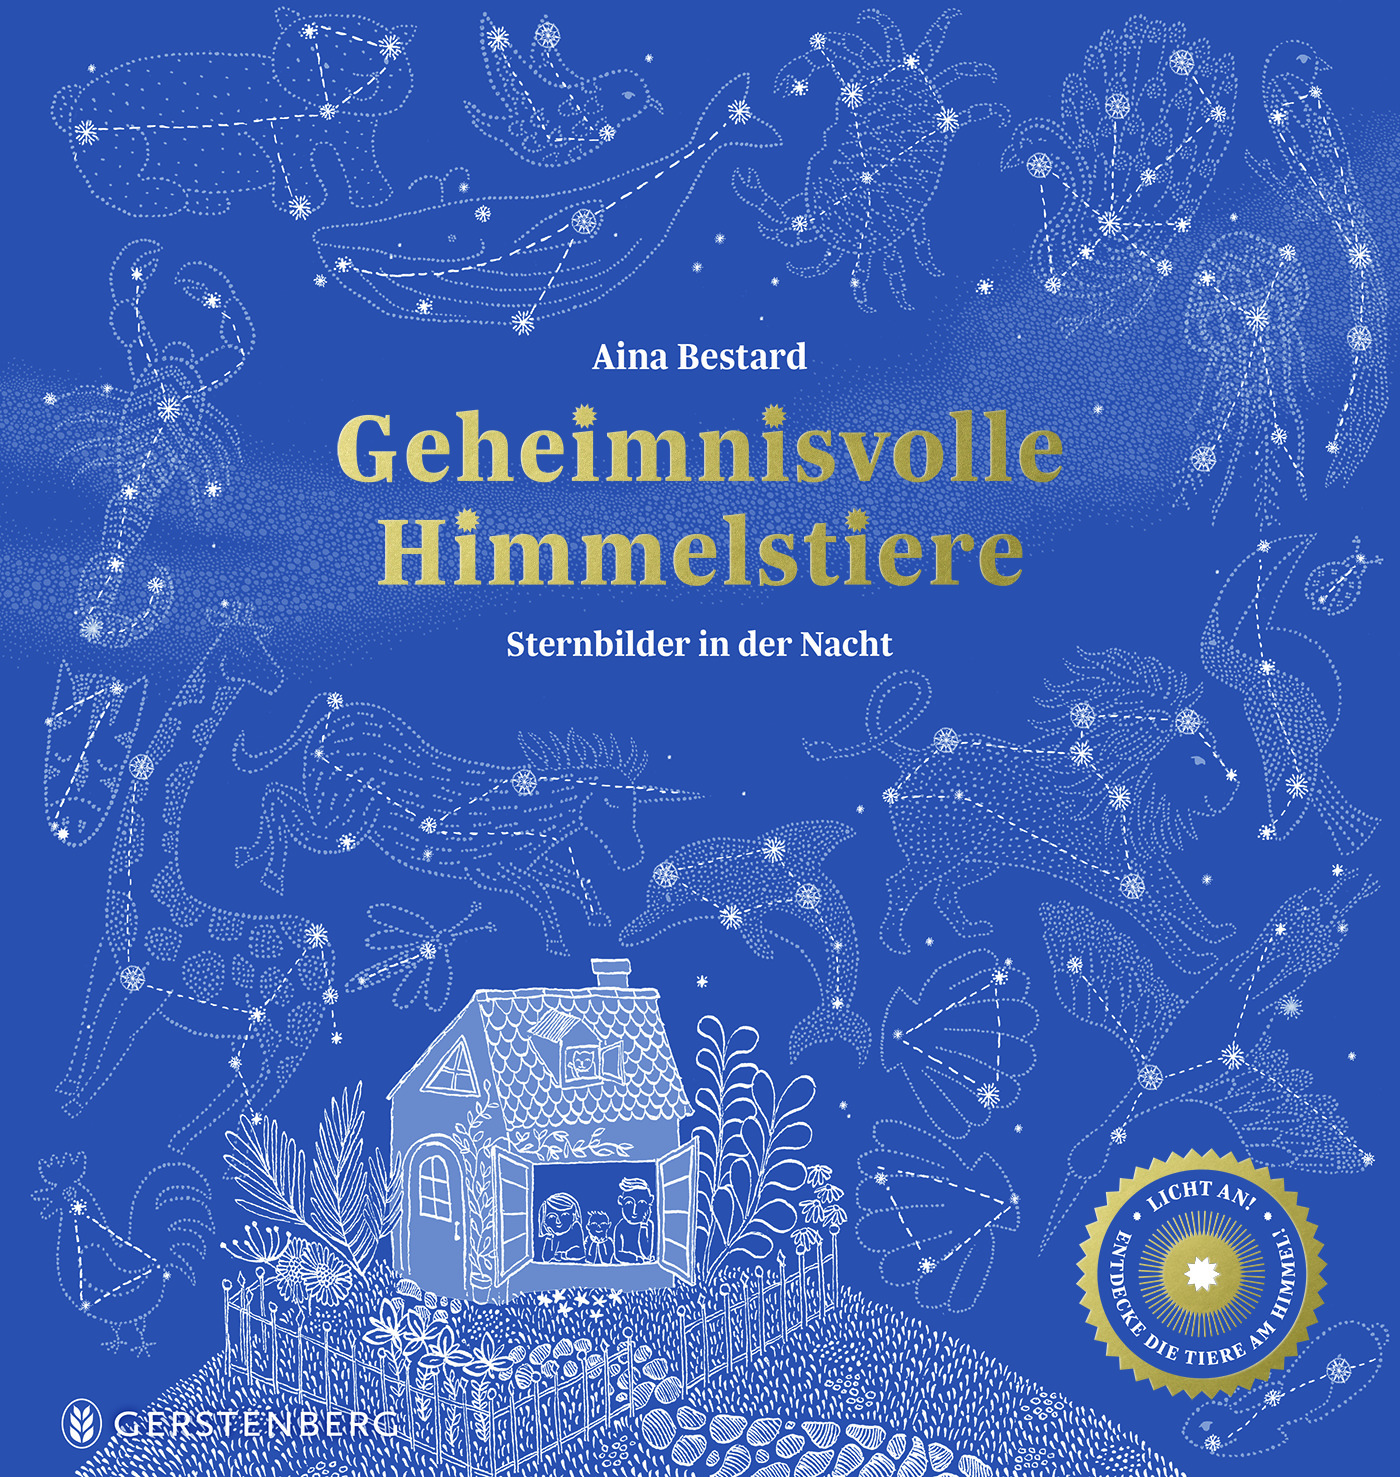 Buchcover "Geheimnisvolle Himmelstiere", Gerstenberg 